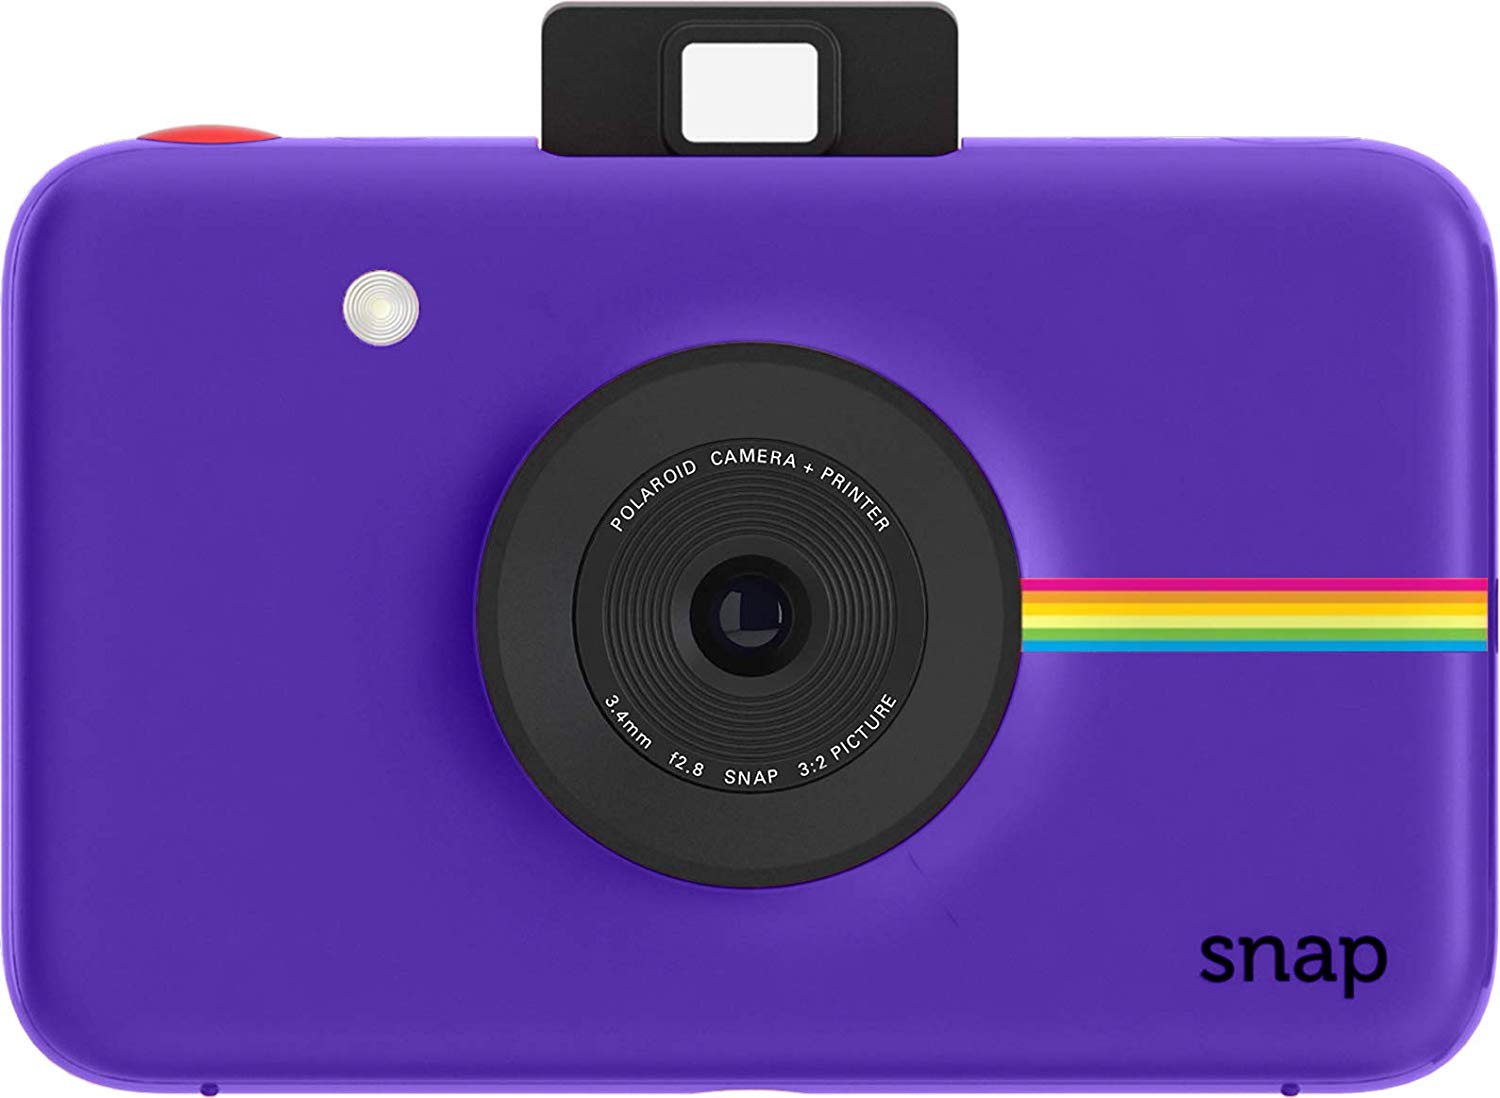 Polaroid snap in purple